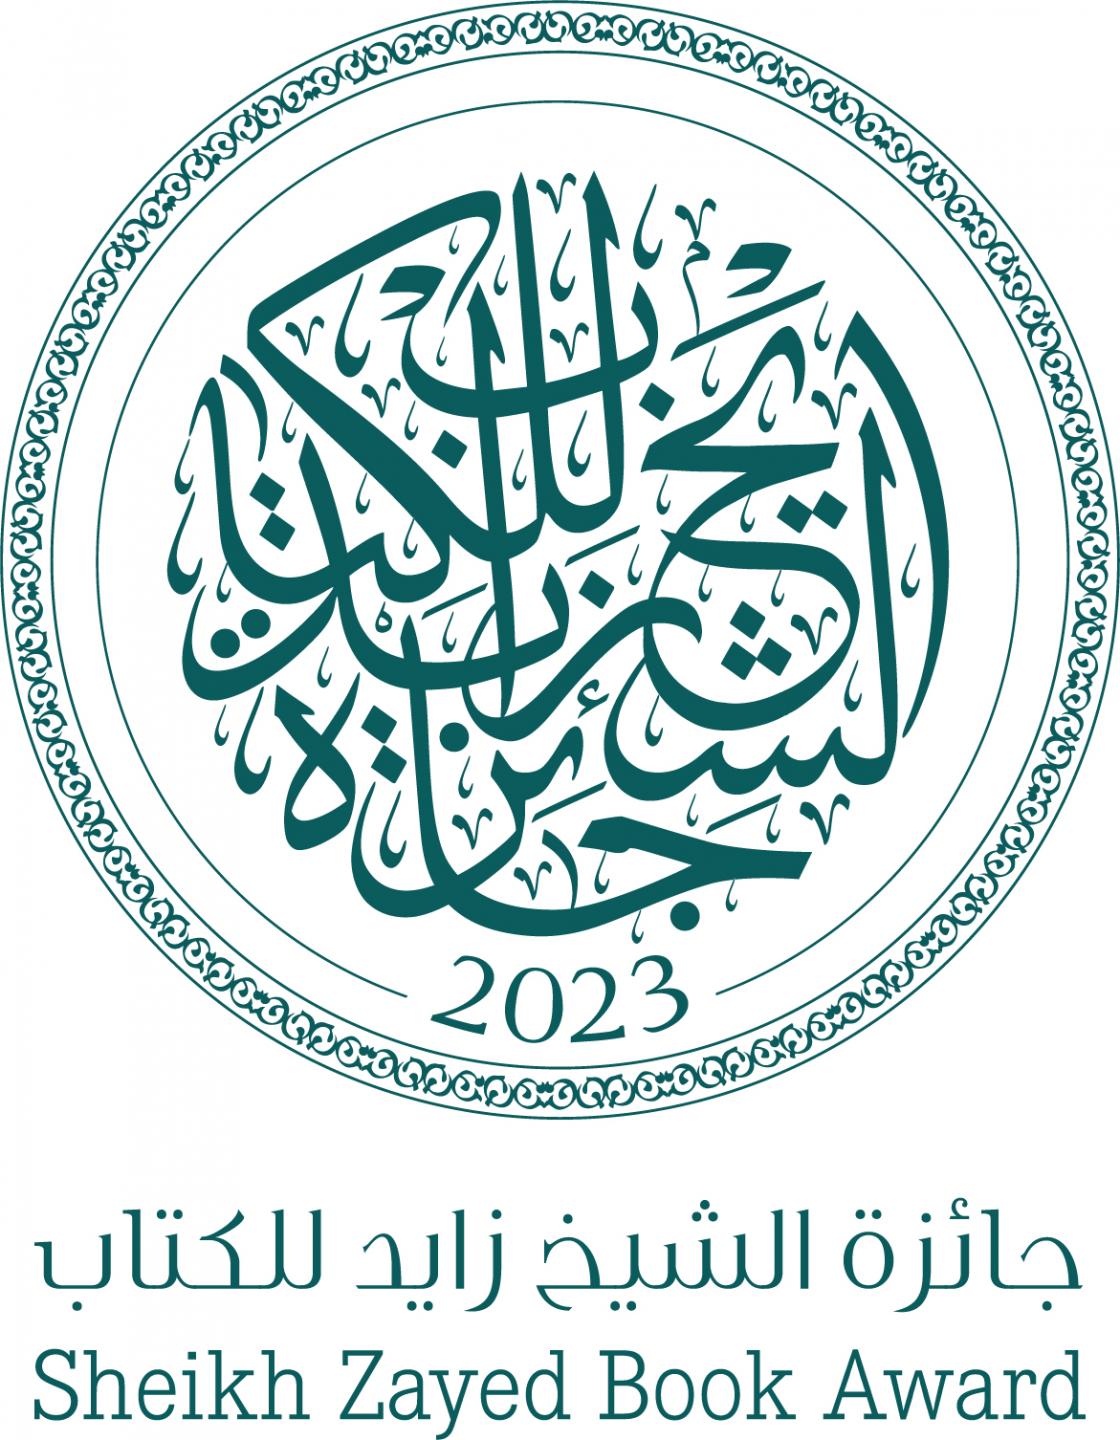 Logo for the Sheikh Zayed Book Award